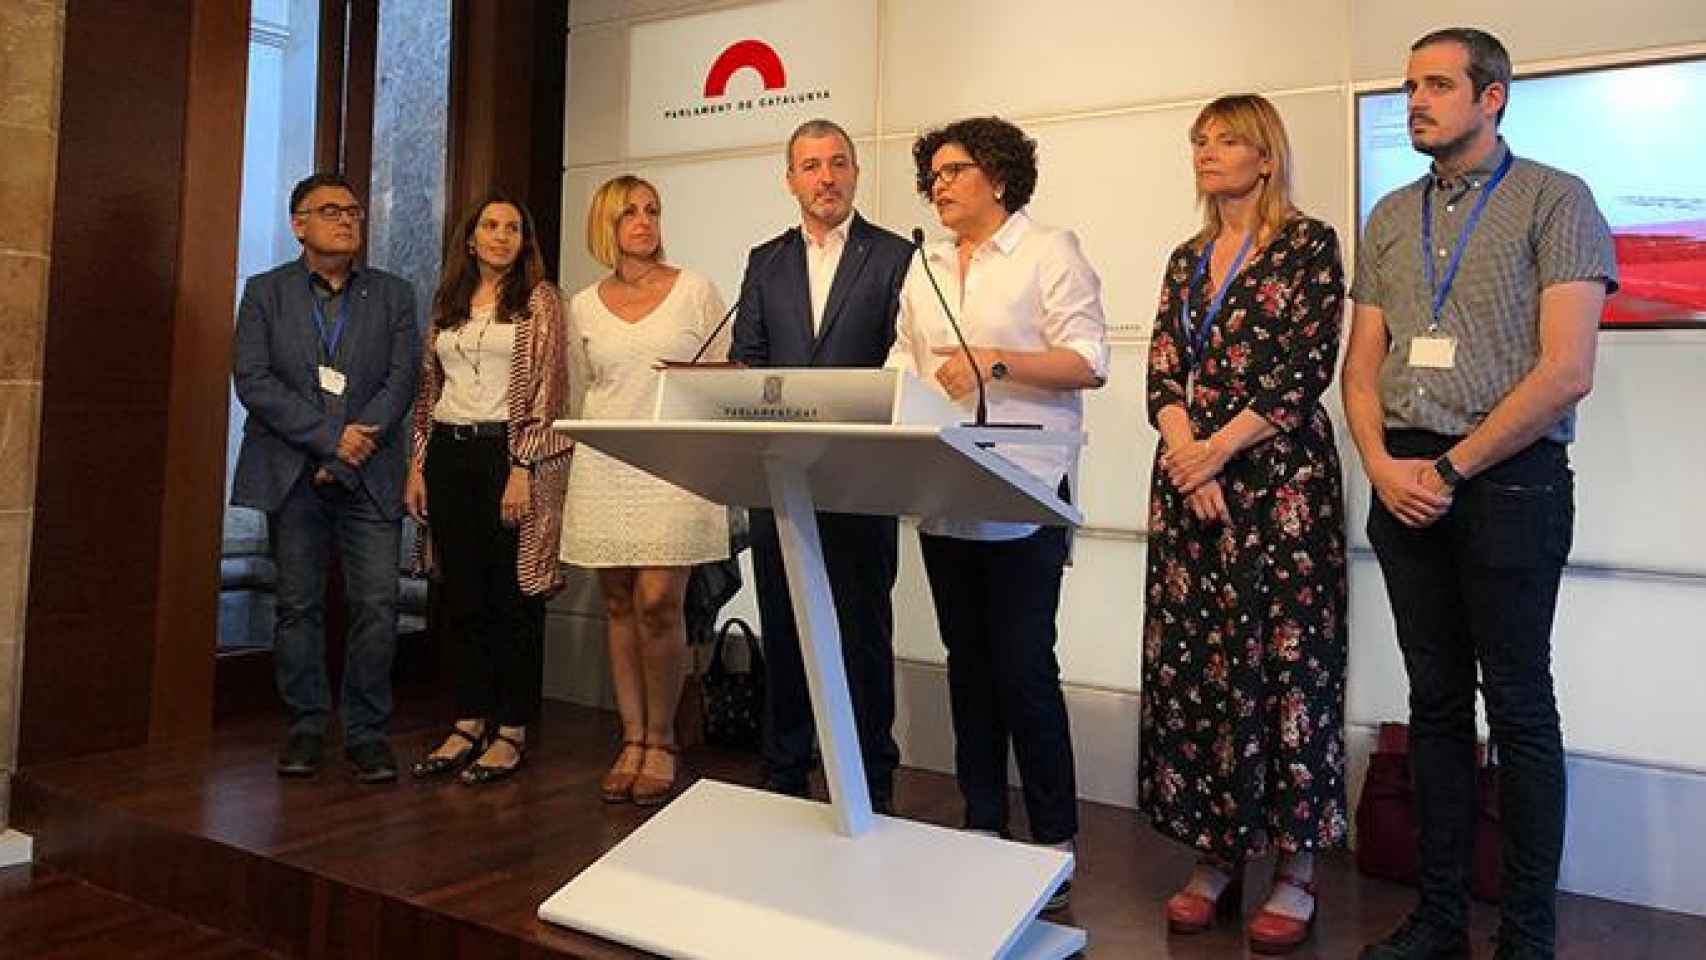 El líder del PSC en el Ayuntamiento de Barceona Jaume Collboni, junto a cargos municipales, ha anunciado la reforma de la ley de alquileres del PP / CG